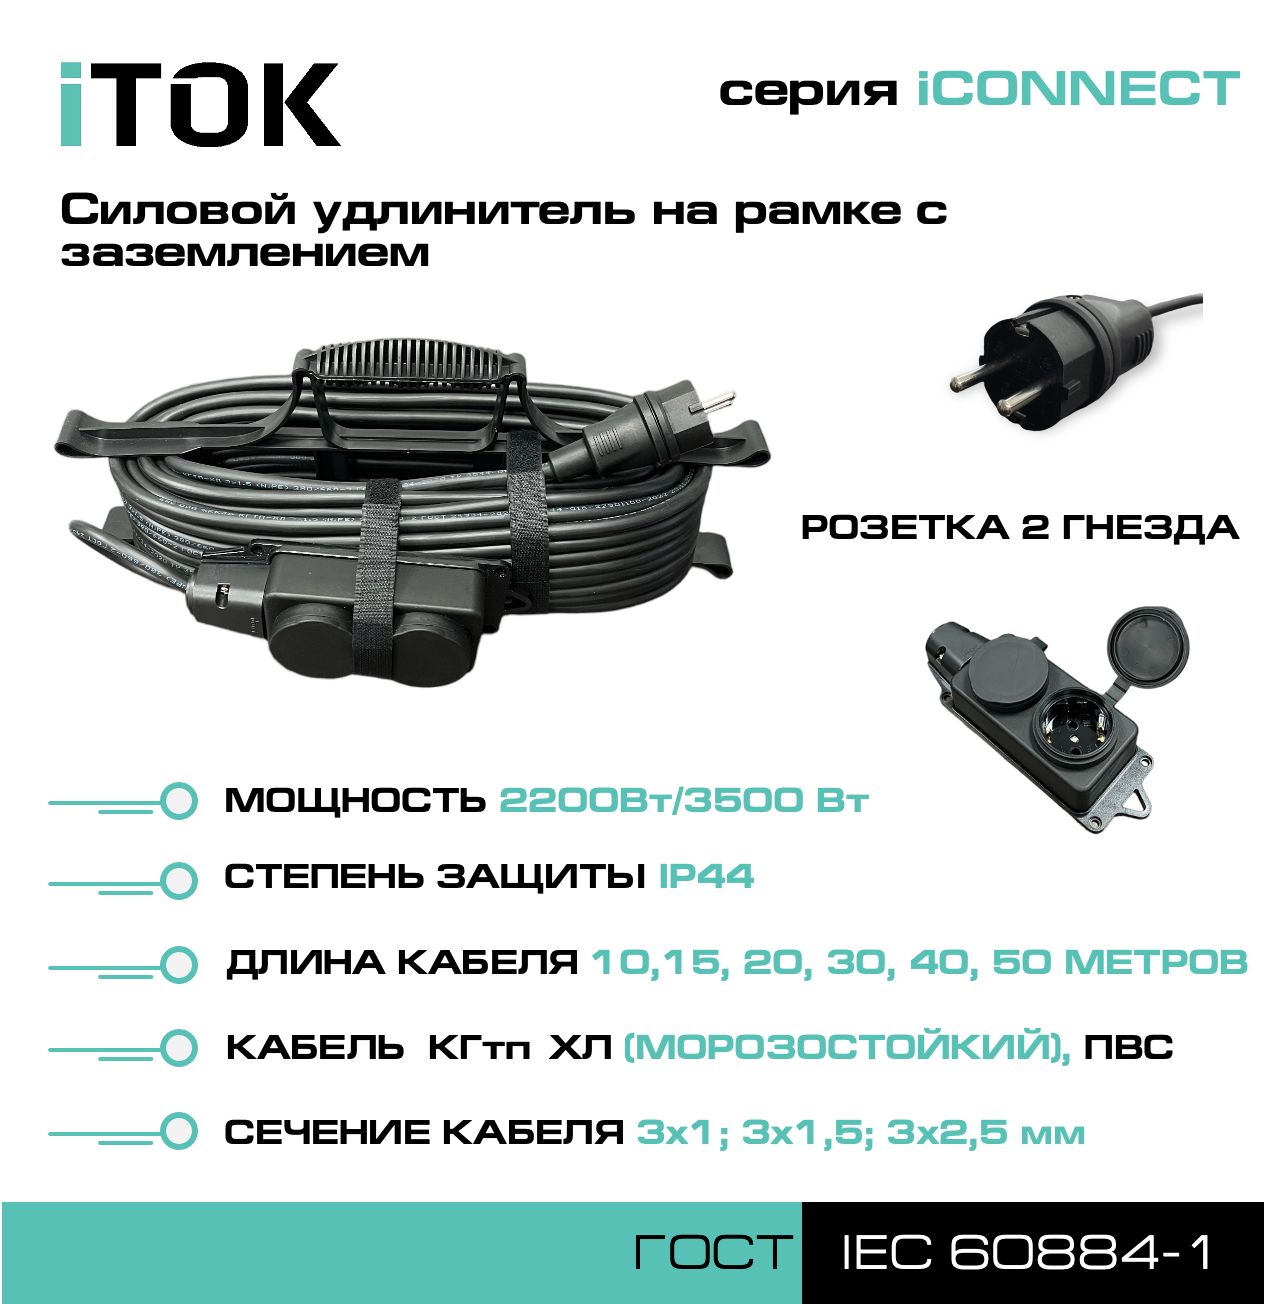 Удлинитель на рамке с заземлением серии iTOK iCONNECT ПВС 3х1 мм 2 гнезда IP44 30 м зарядные гнезда usb в виде клавиши marina 3 1 а more 10264236